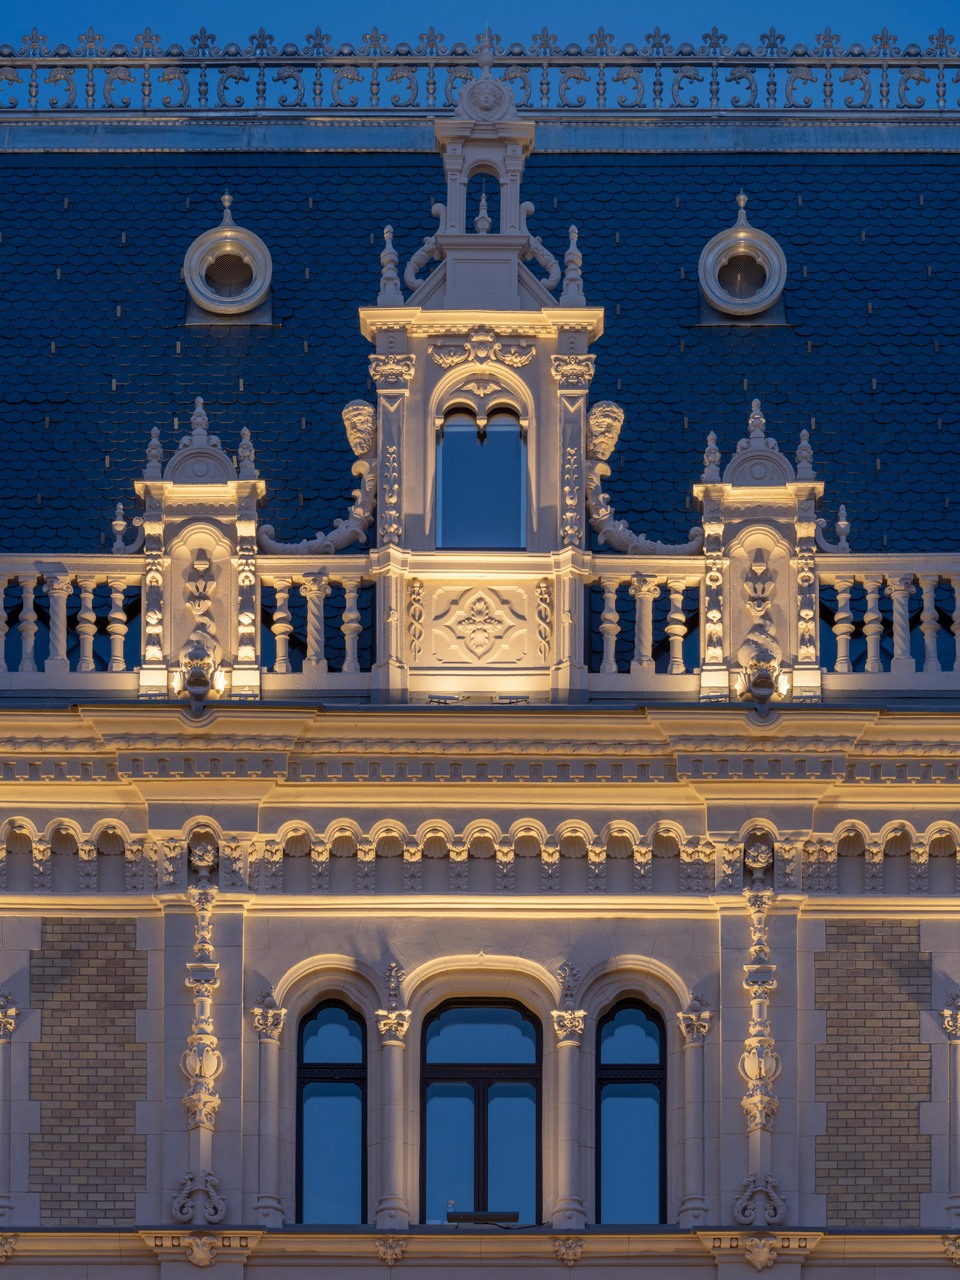 Drechsler-palota / W Budapest – generáltervező: Bánáti + Hartvig Építész Iroda Kft. – fotó: Bujnovszky Tamás
